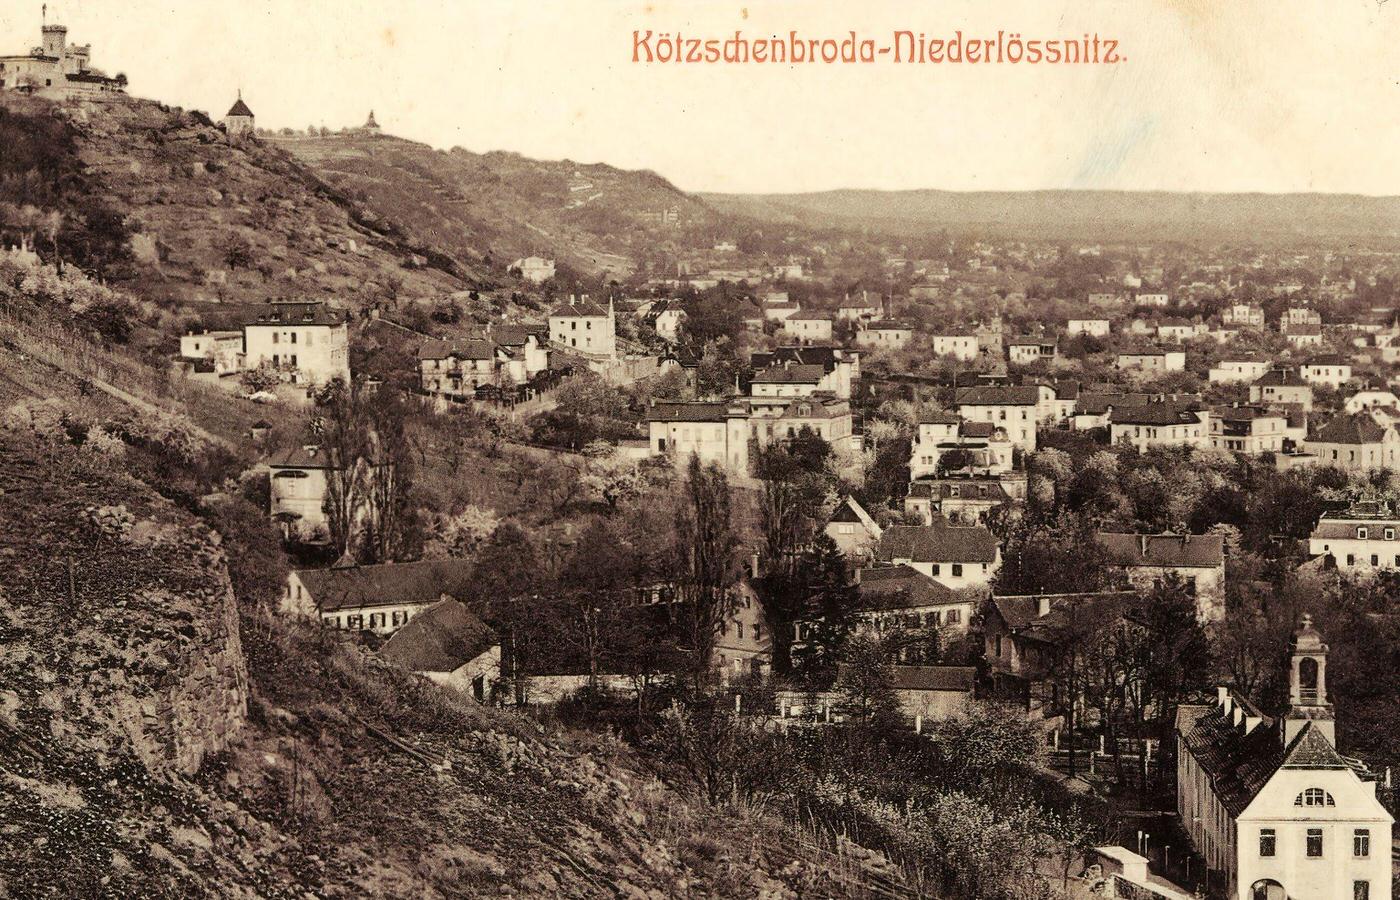 Friedensburg, Altfriedstein, Niederlossnitz, Landkreis Meissen, Germany, 1903.